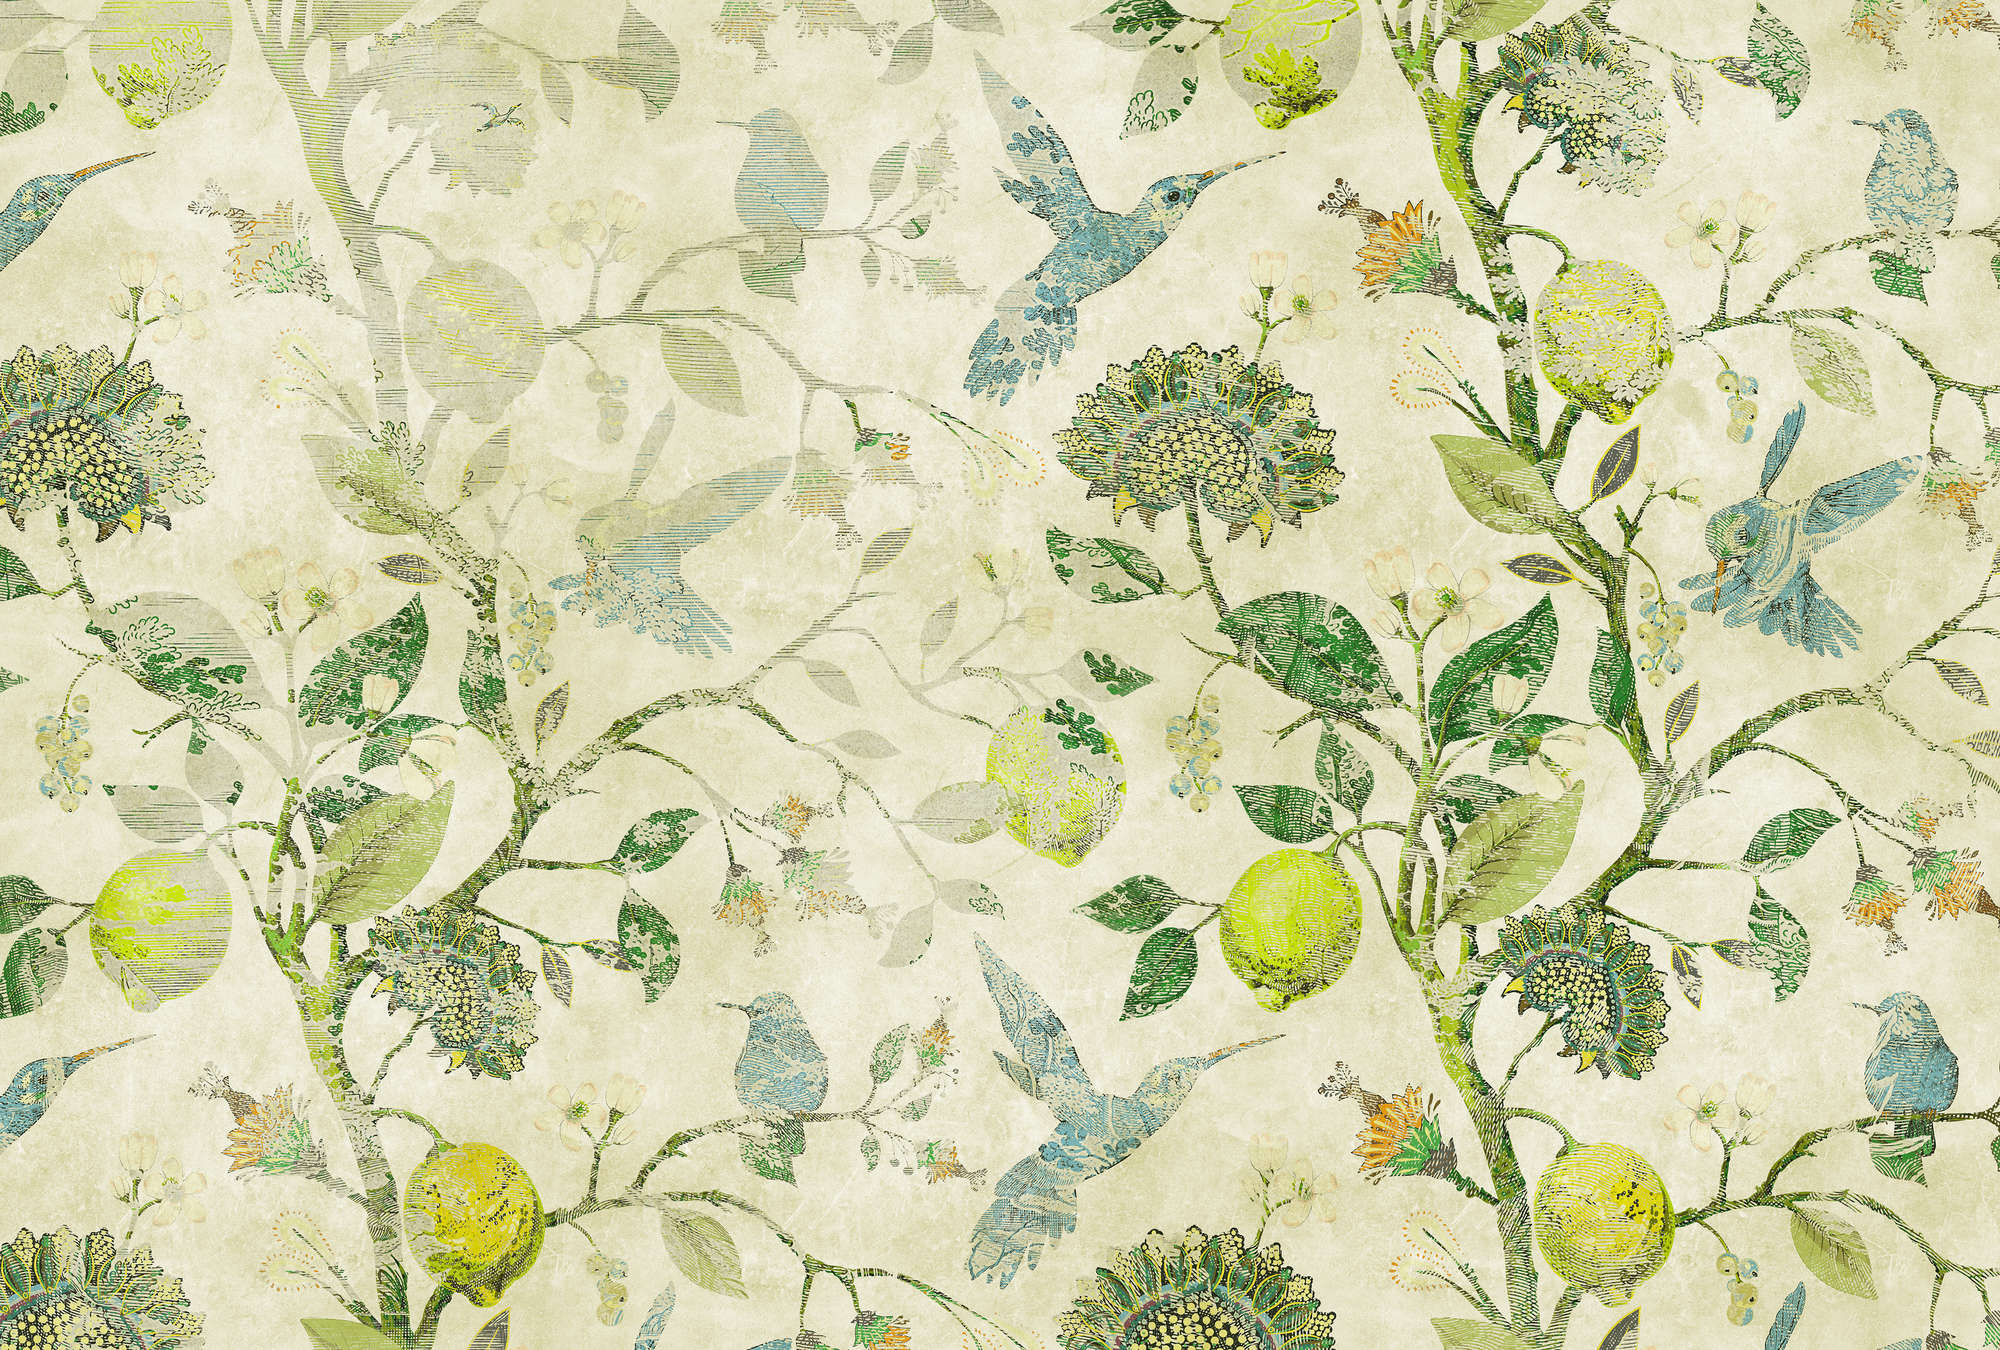             In the Lemon Tree 3 - Papier peint panoramique branches de citron vert style vintage
        